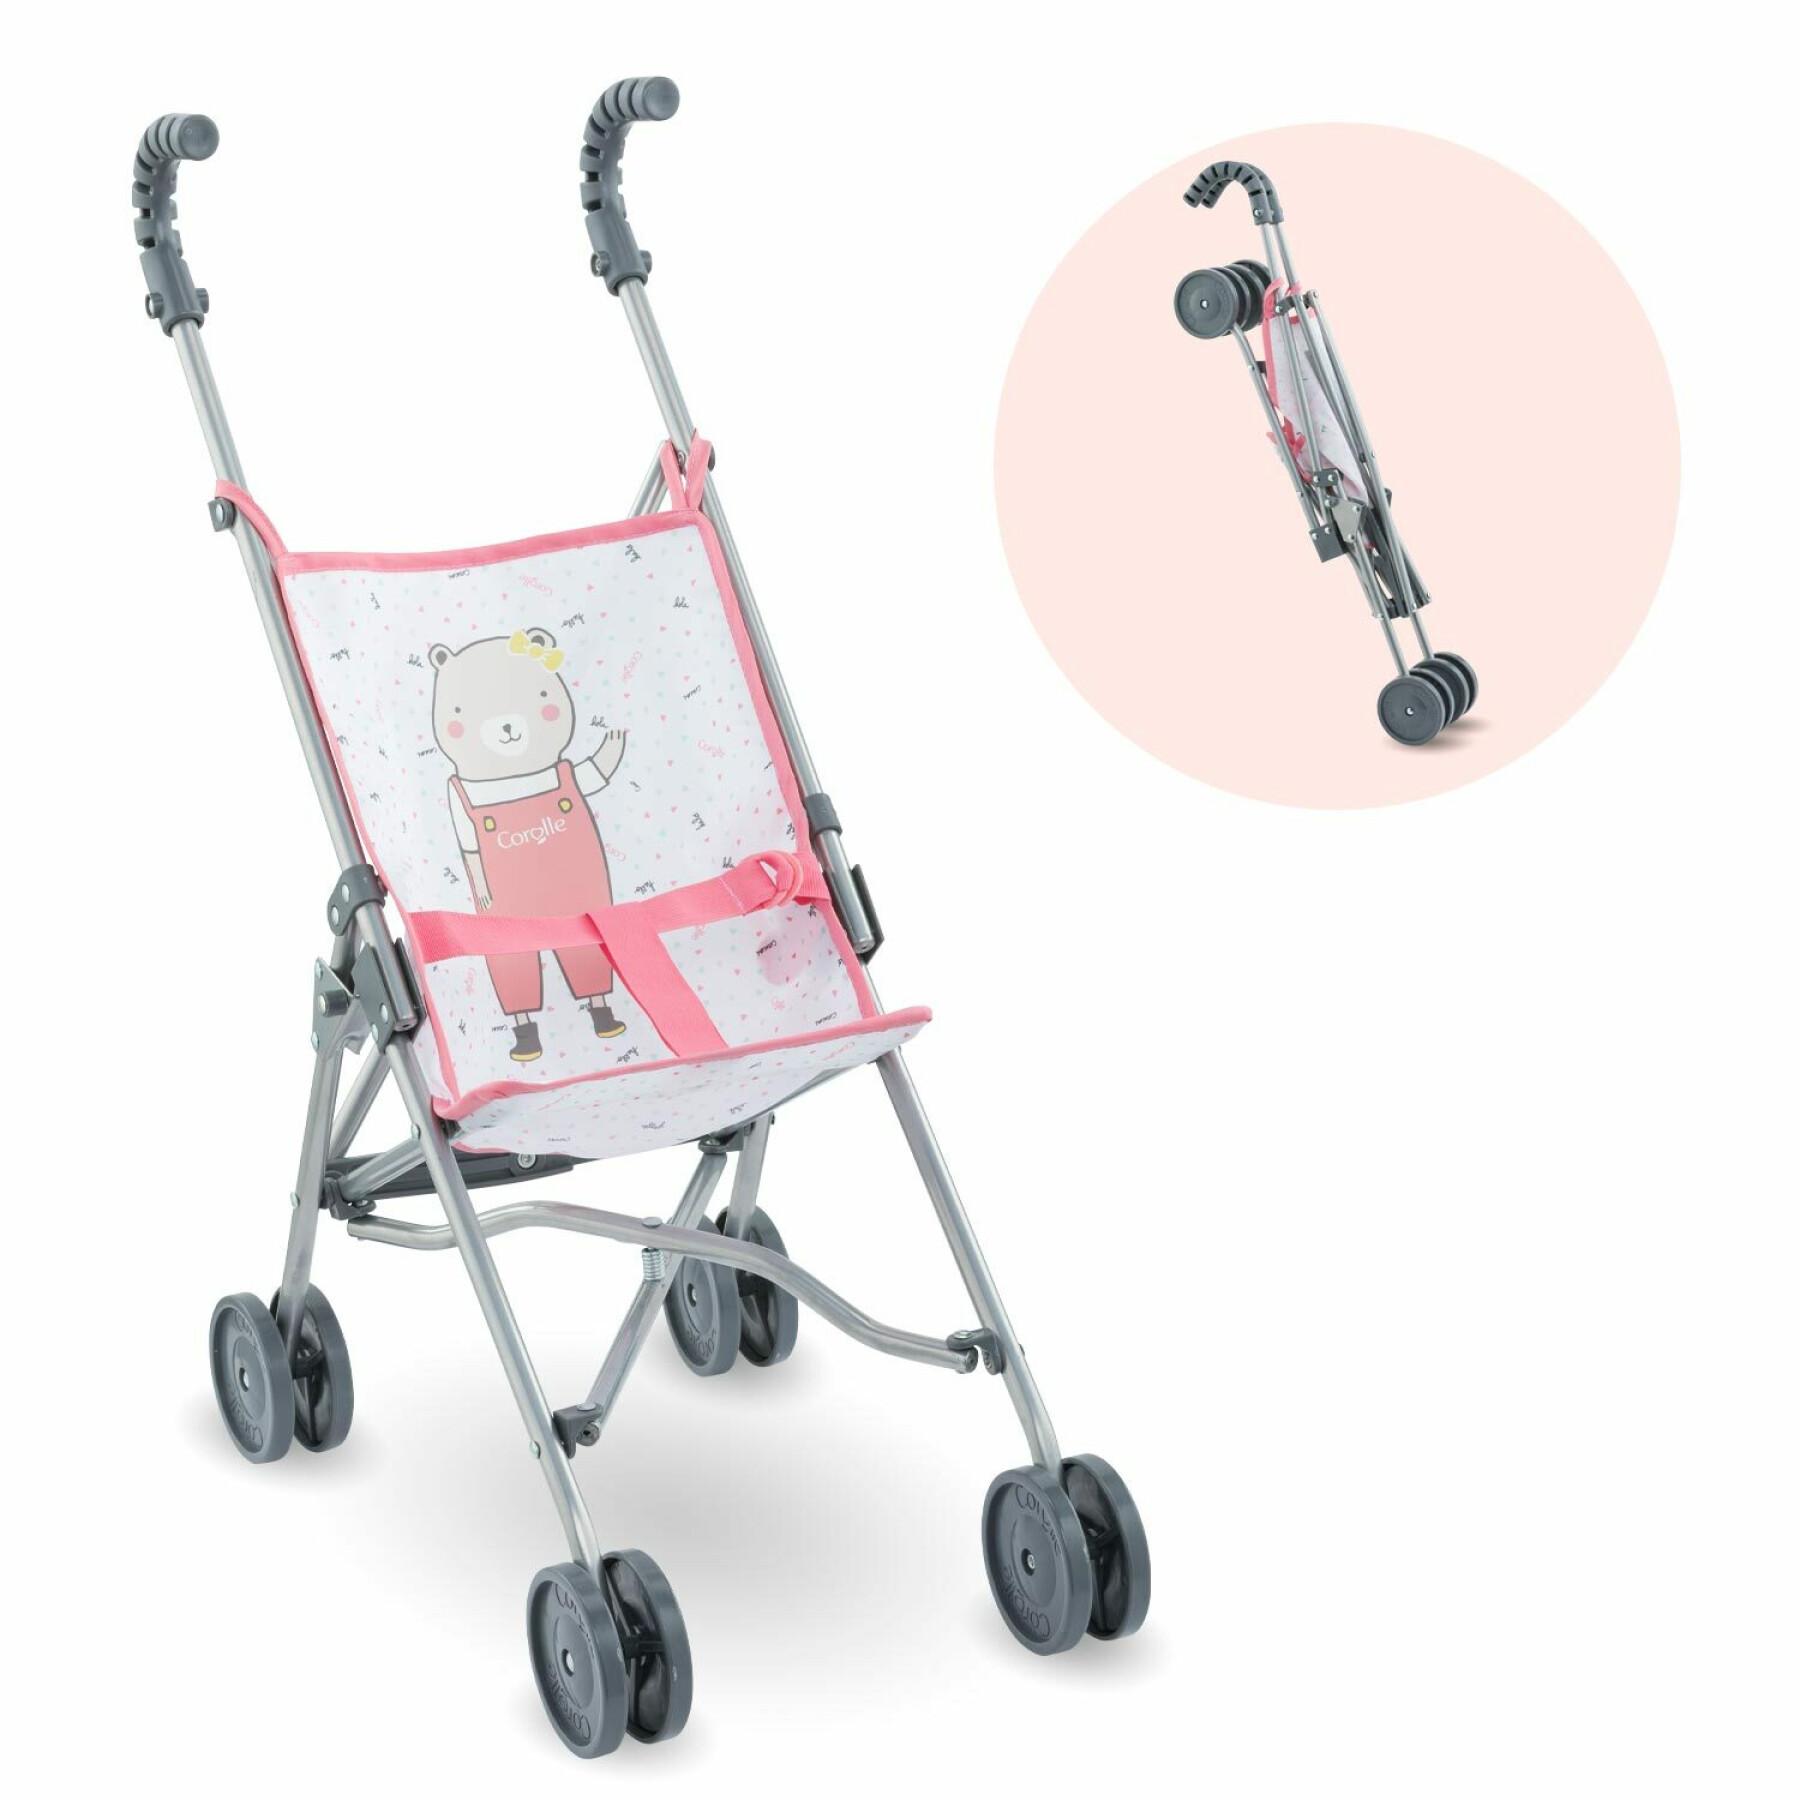 Roze wandelwagen voor baby Corolle